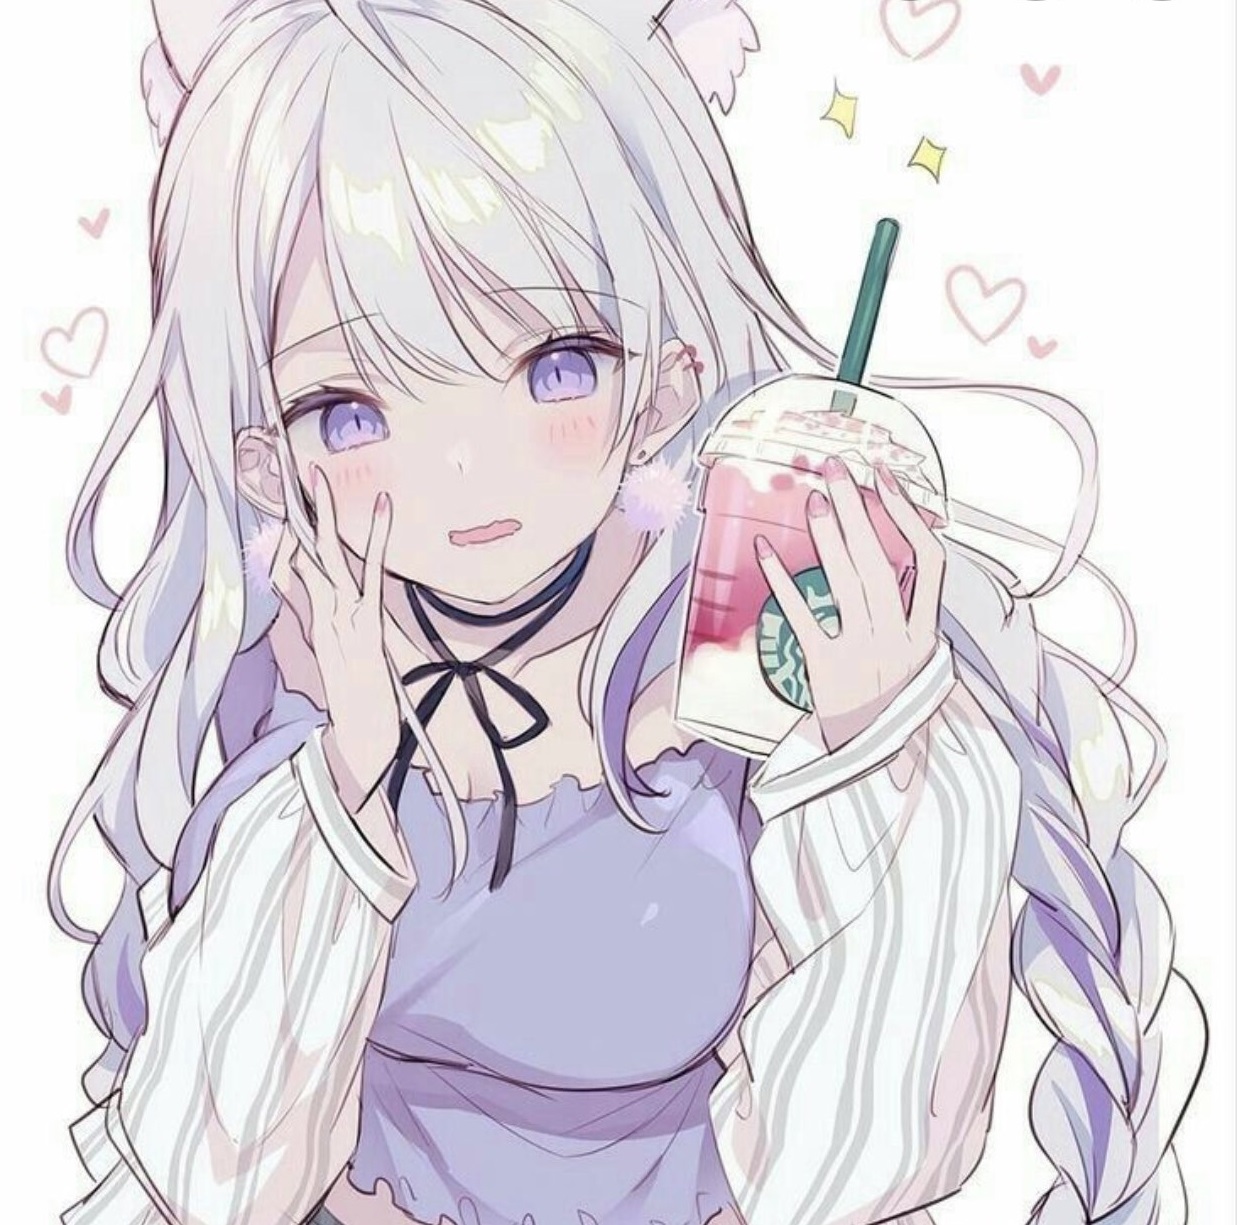 Ngắm nhìn bức tranh tuyệt đẹp về một cô nàng trà sữa cute trên màn hình, bạn sẽ bất ngờ với sự tinh tế và sáng tạo của nghệ sĩ. Đó chắc chắn sẽ là một trải nghiệm thú vị đối với những ai yêu thích anime.